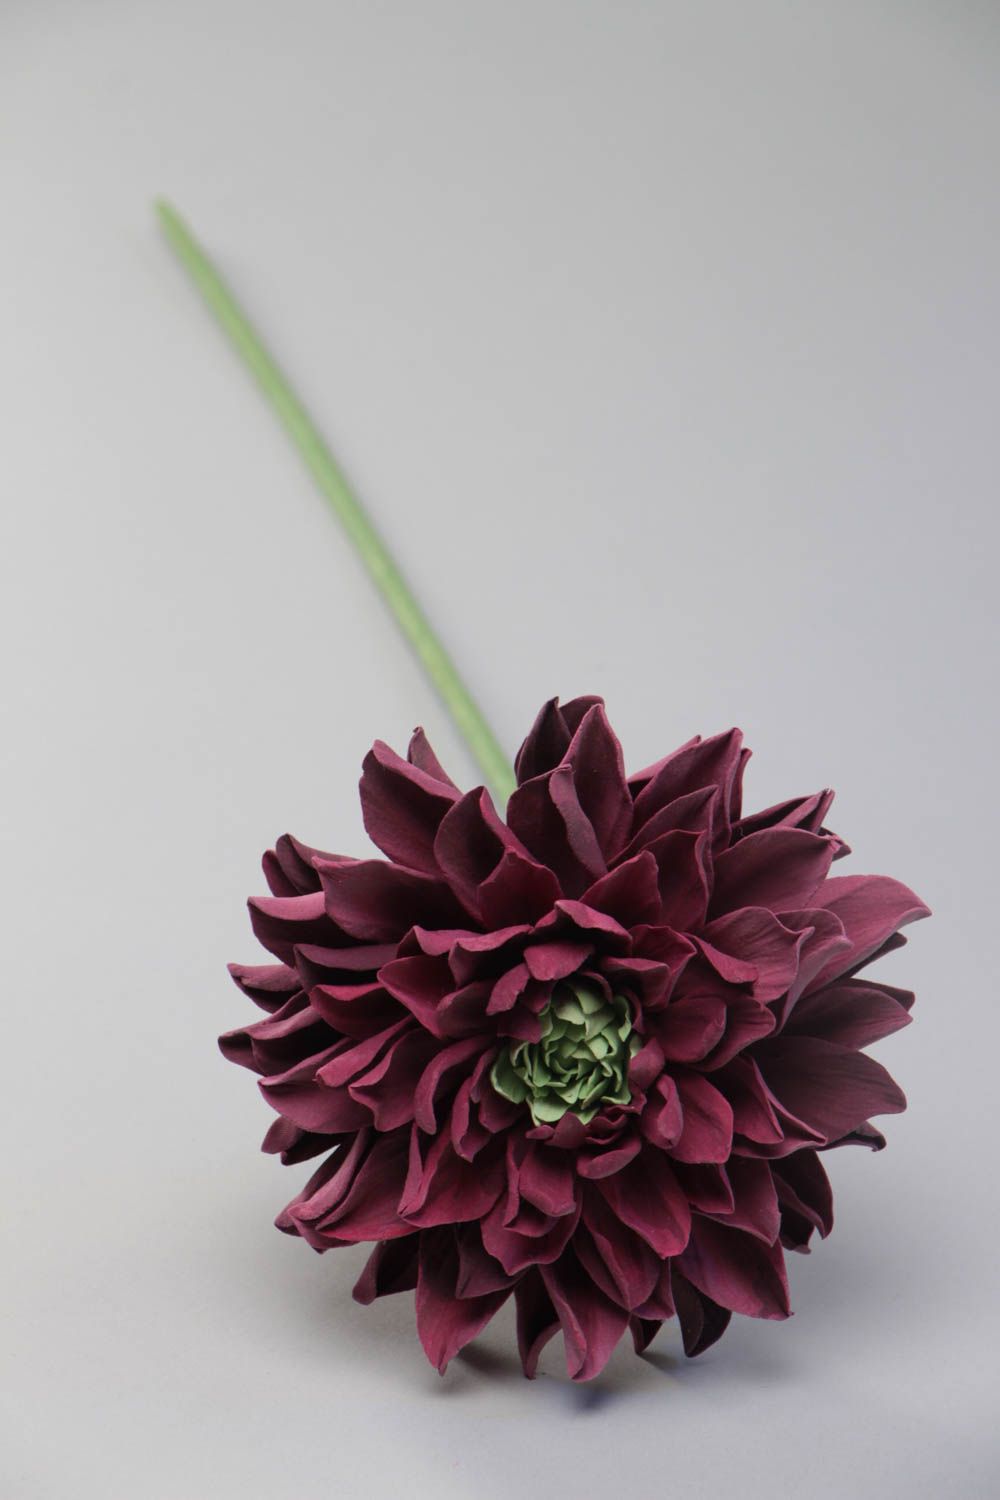 Handmade dekorative Blume Chrysantheme aus Polymerton mit langem Stiel schön foto 2